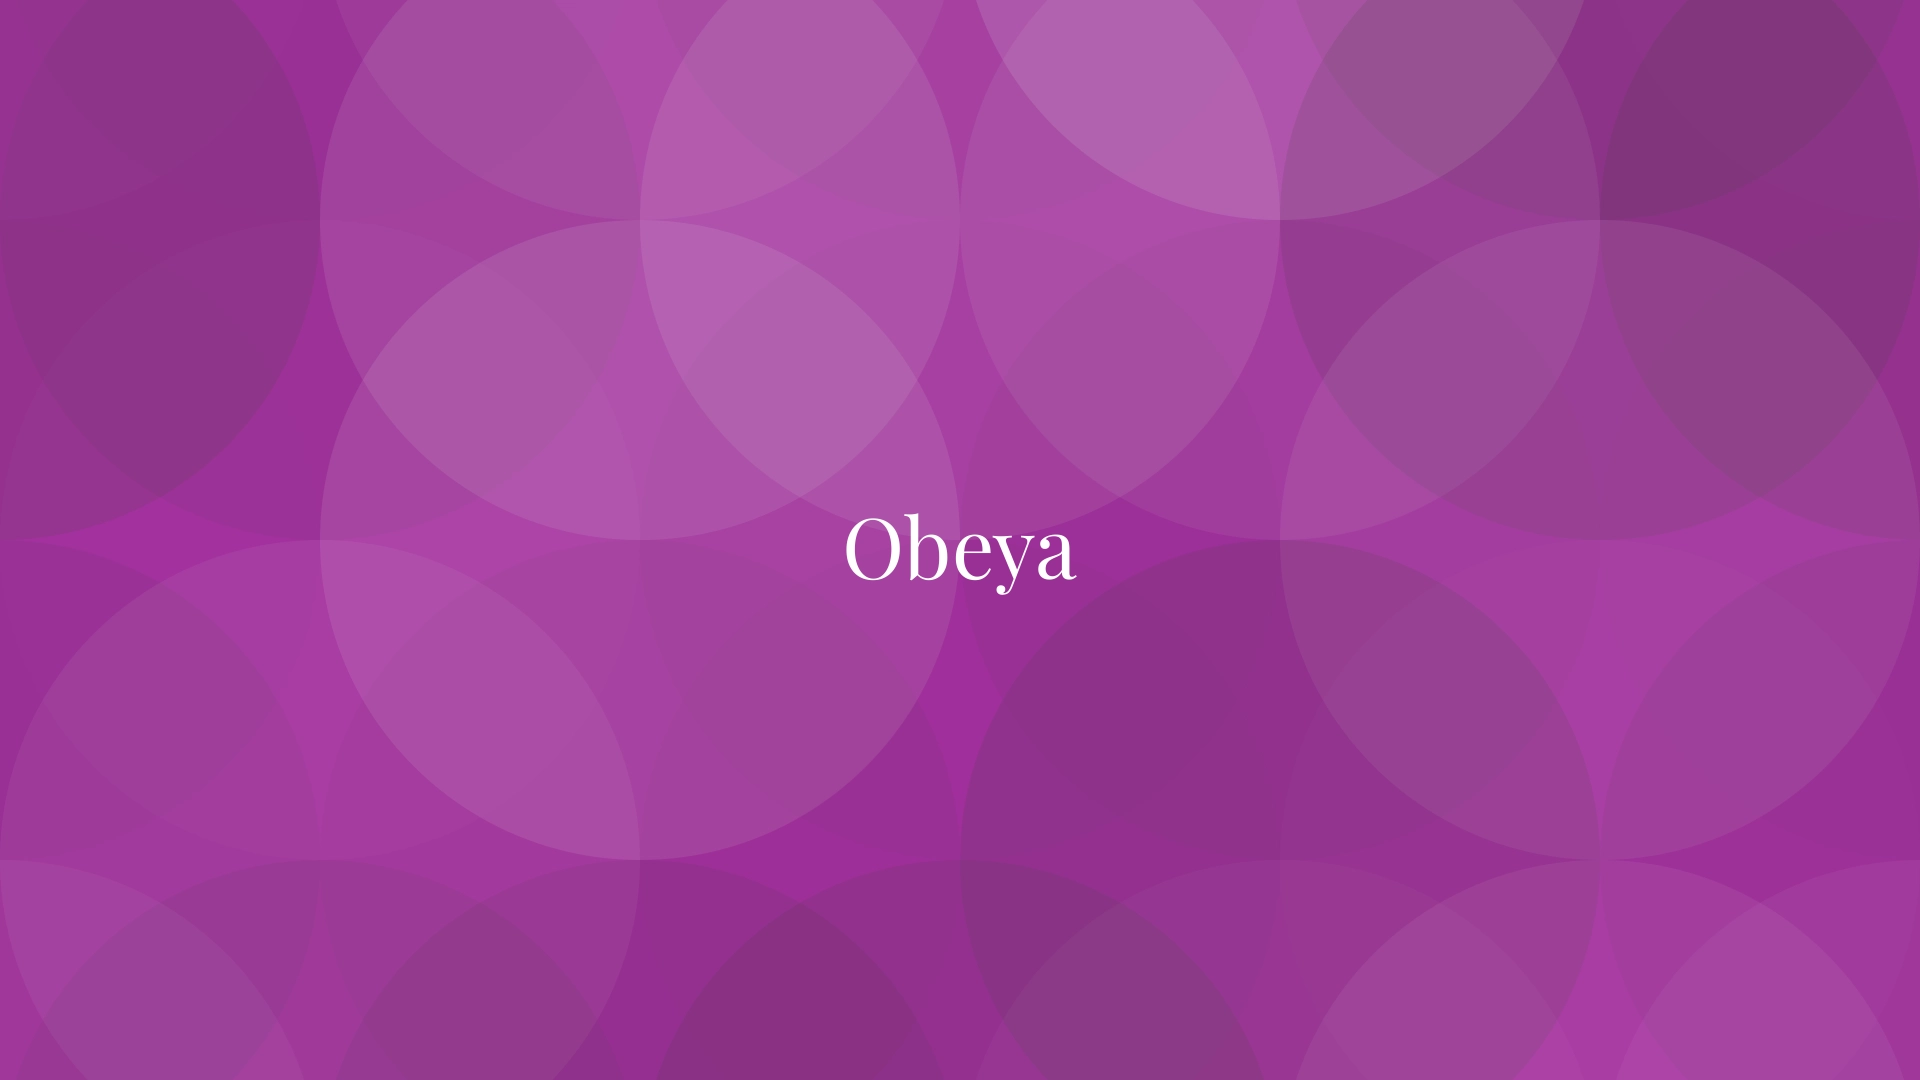 Obeya